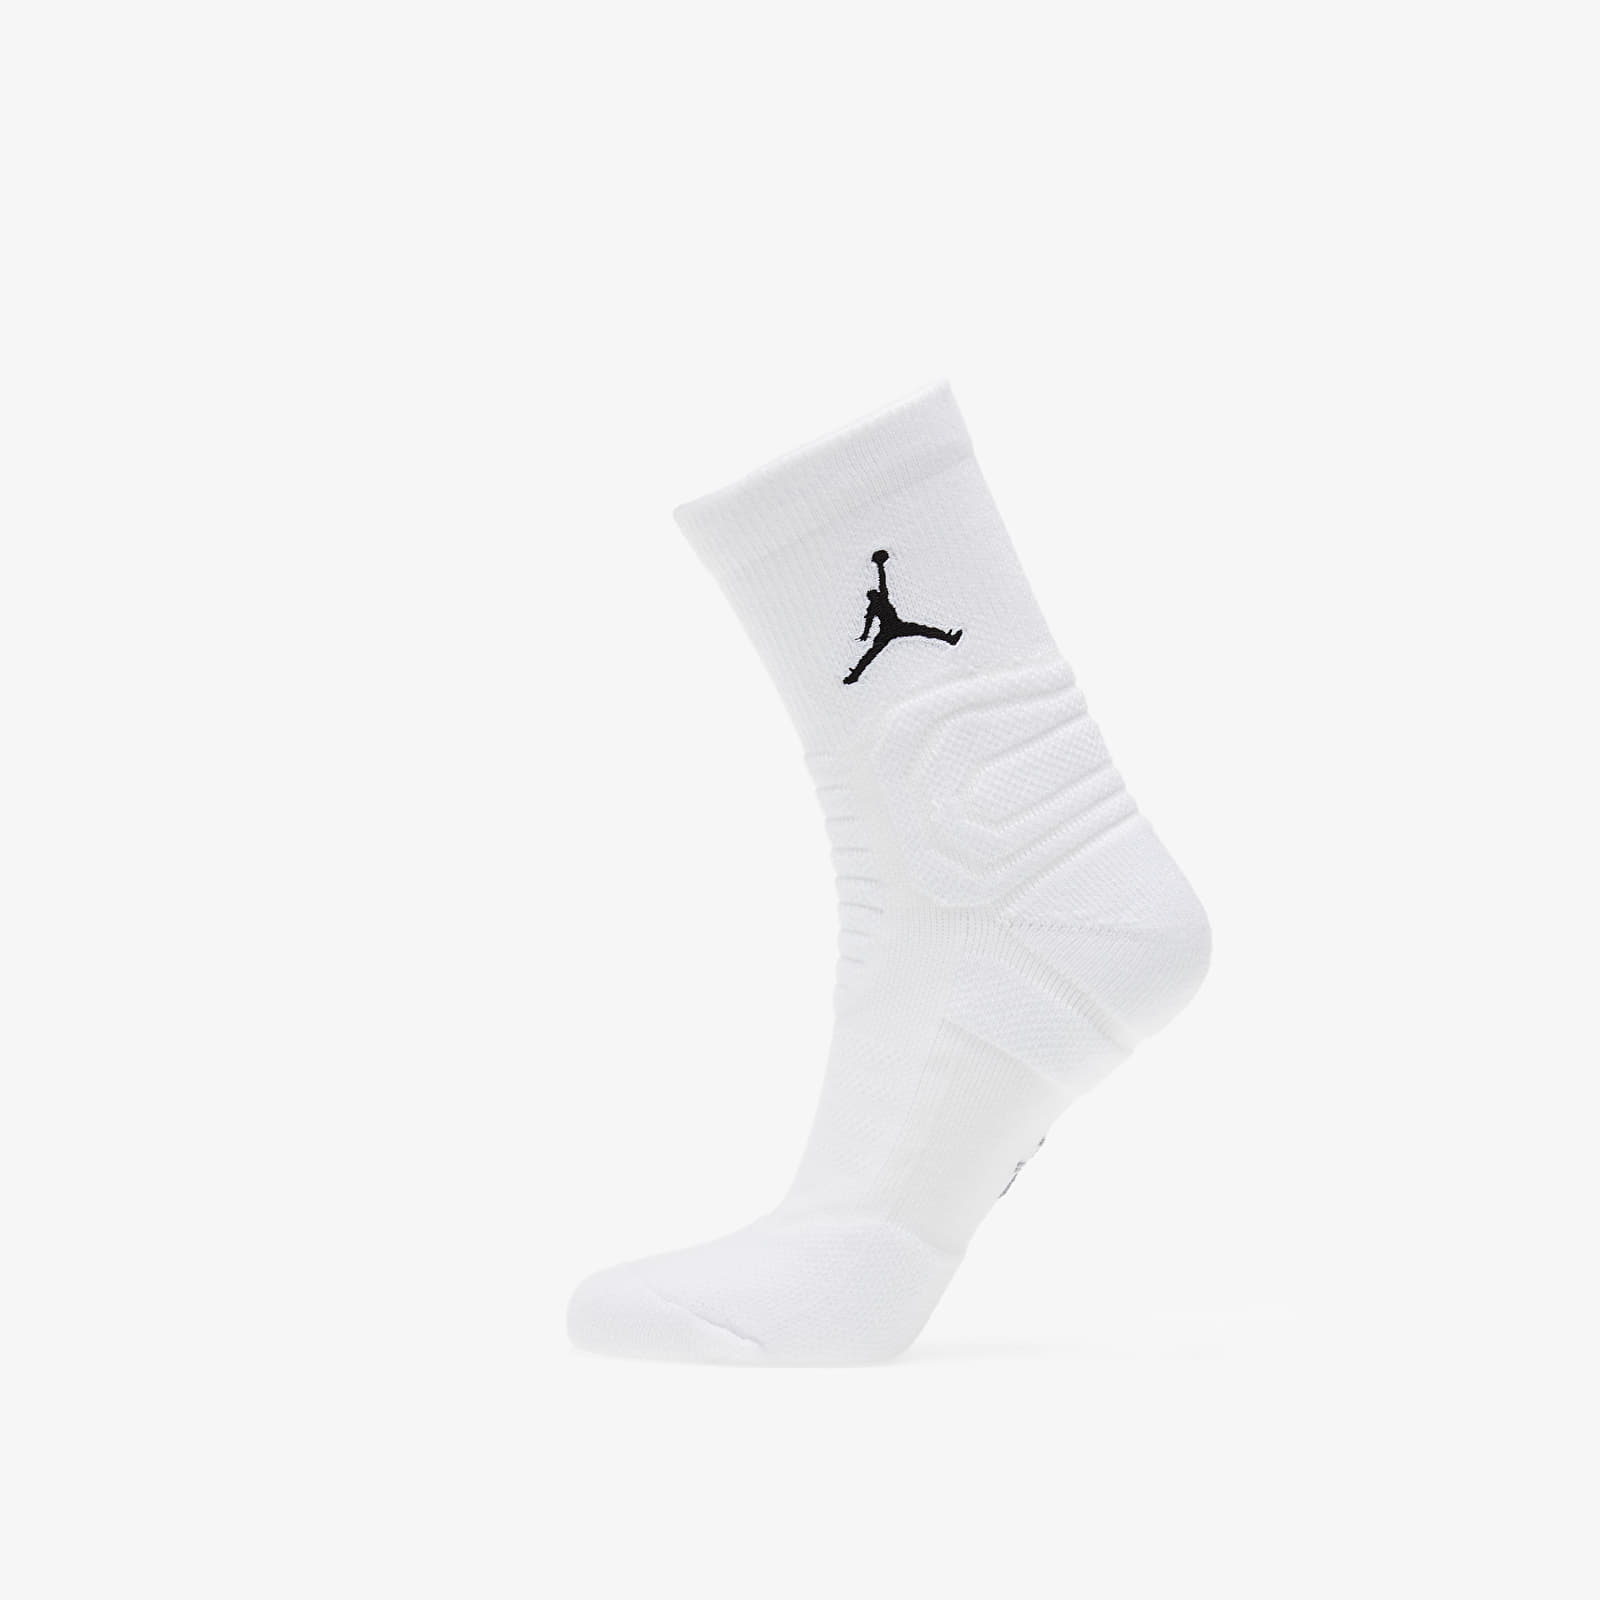 socks for jordan 1 1